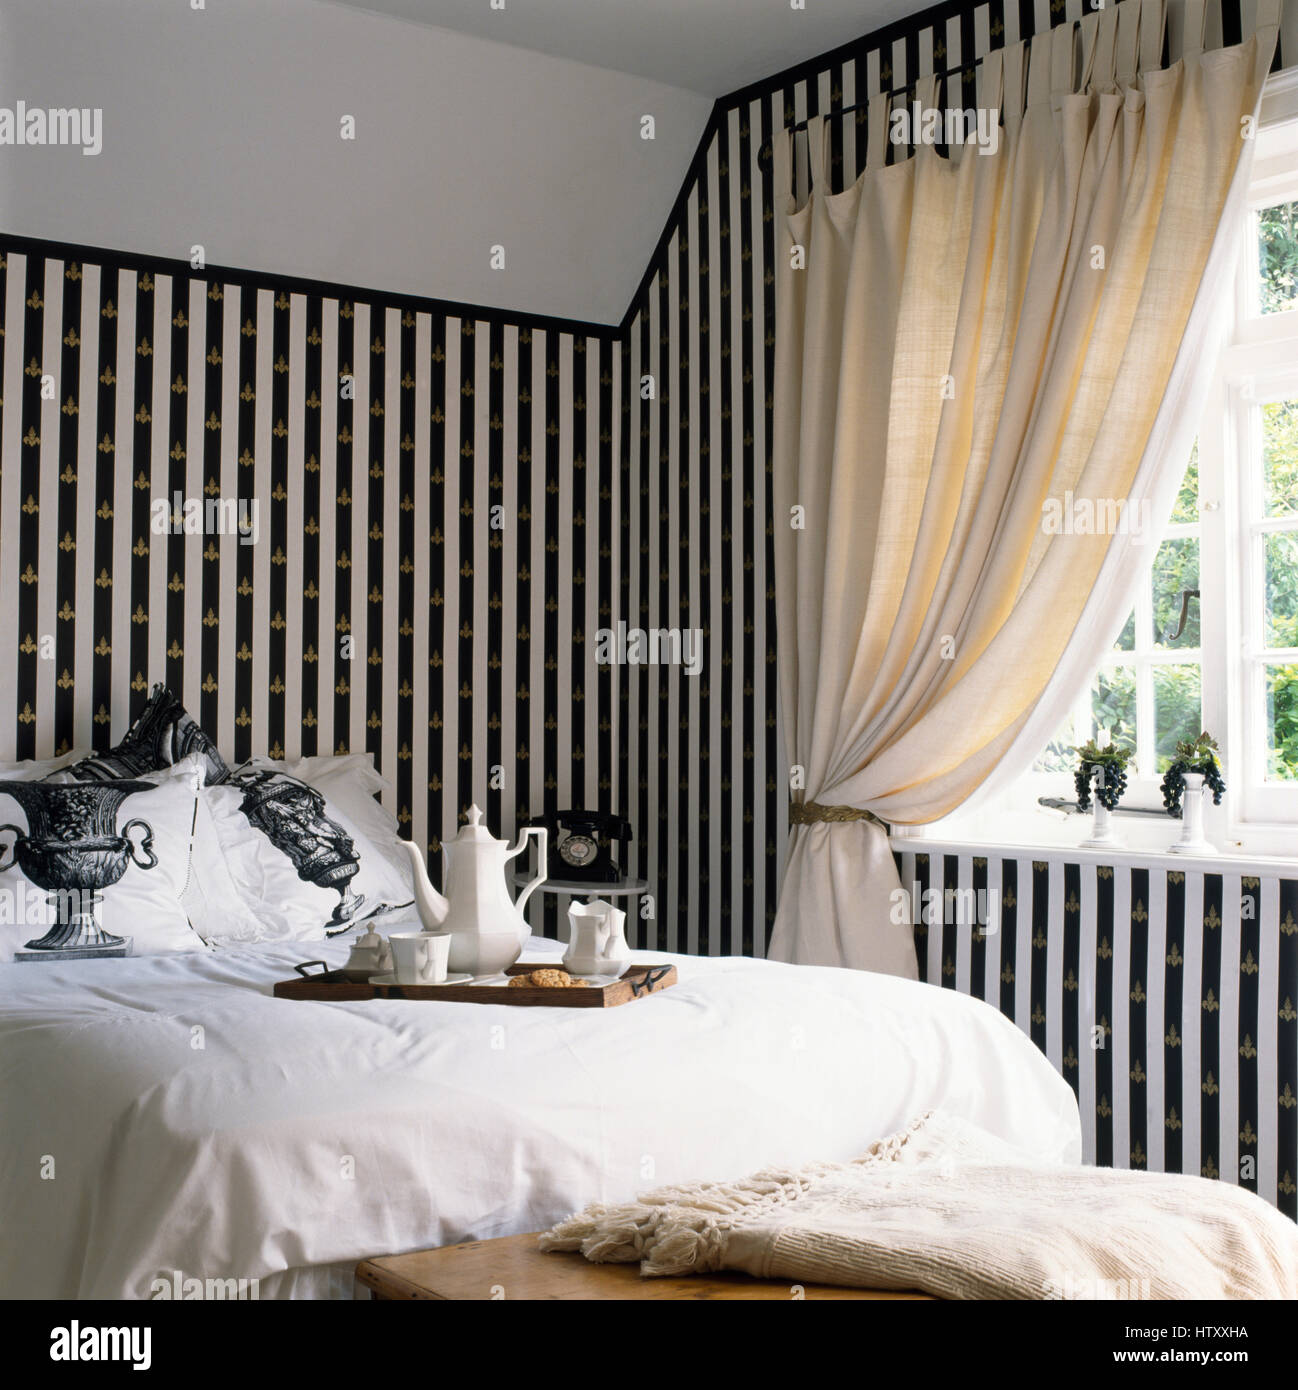 Peint en noir +bandes blanche sur mur à l'aide d'un pochoir fleur de lis d'or dans une chambre avec un plateau de petit-déjeuner et le linge blanc sur le lit Banque D'Images